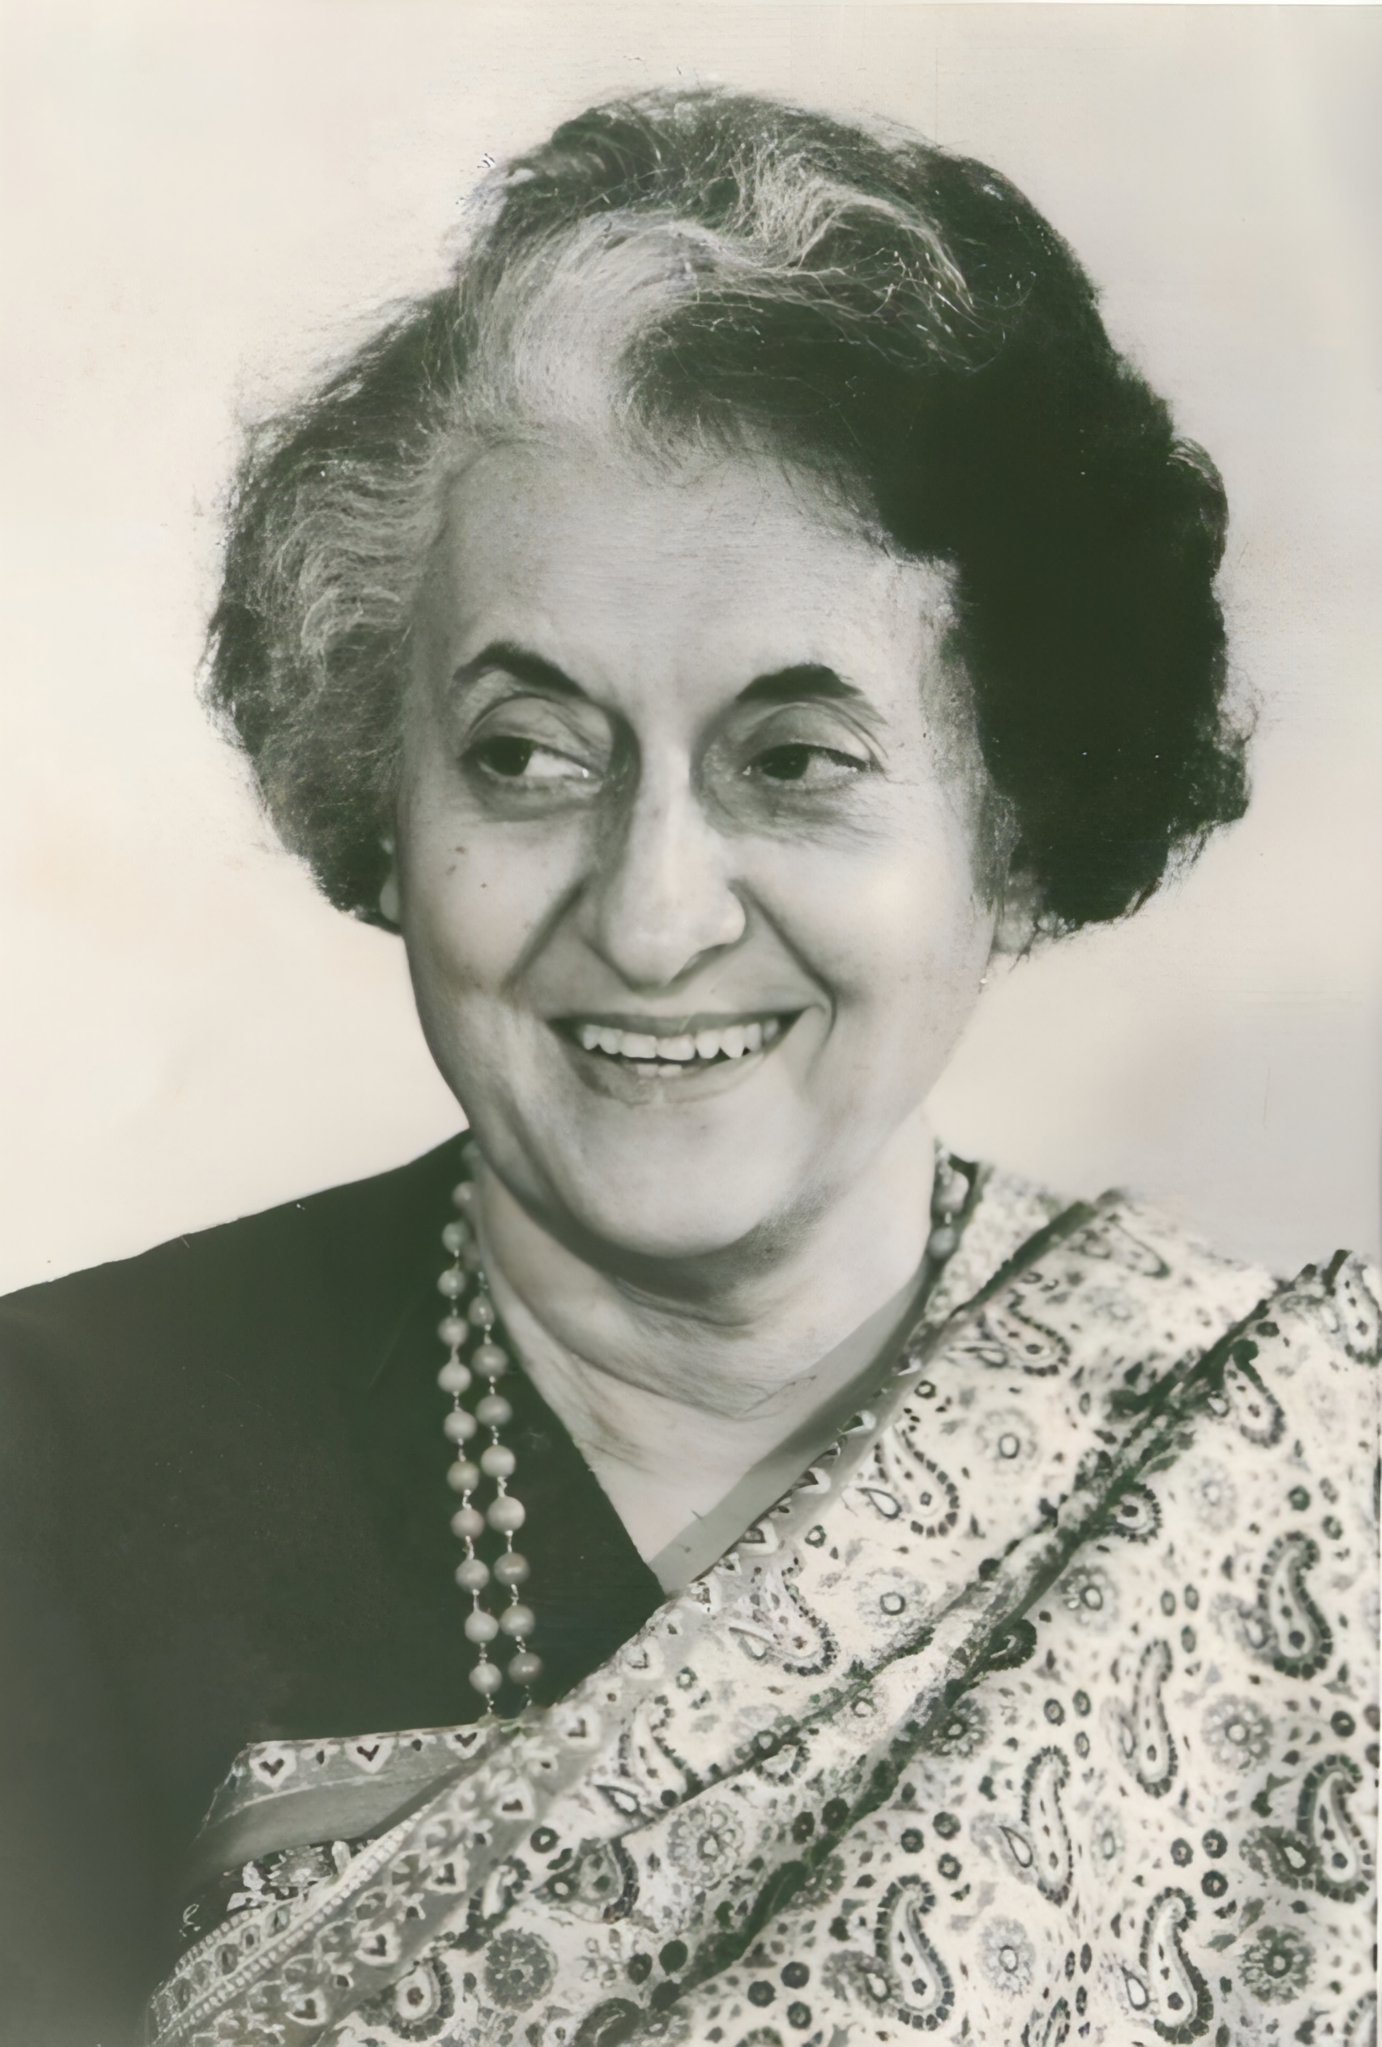 Indira Gandhi.png